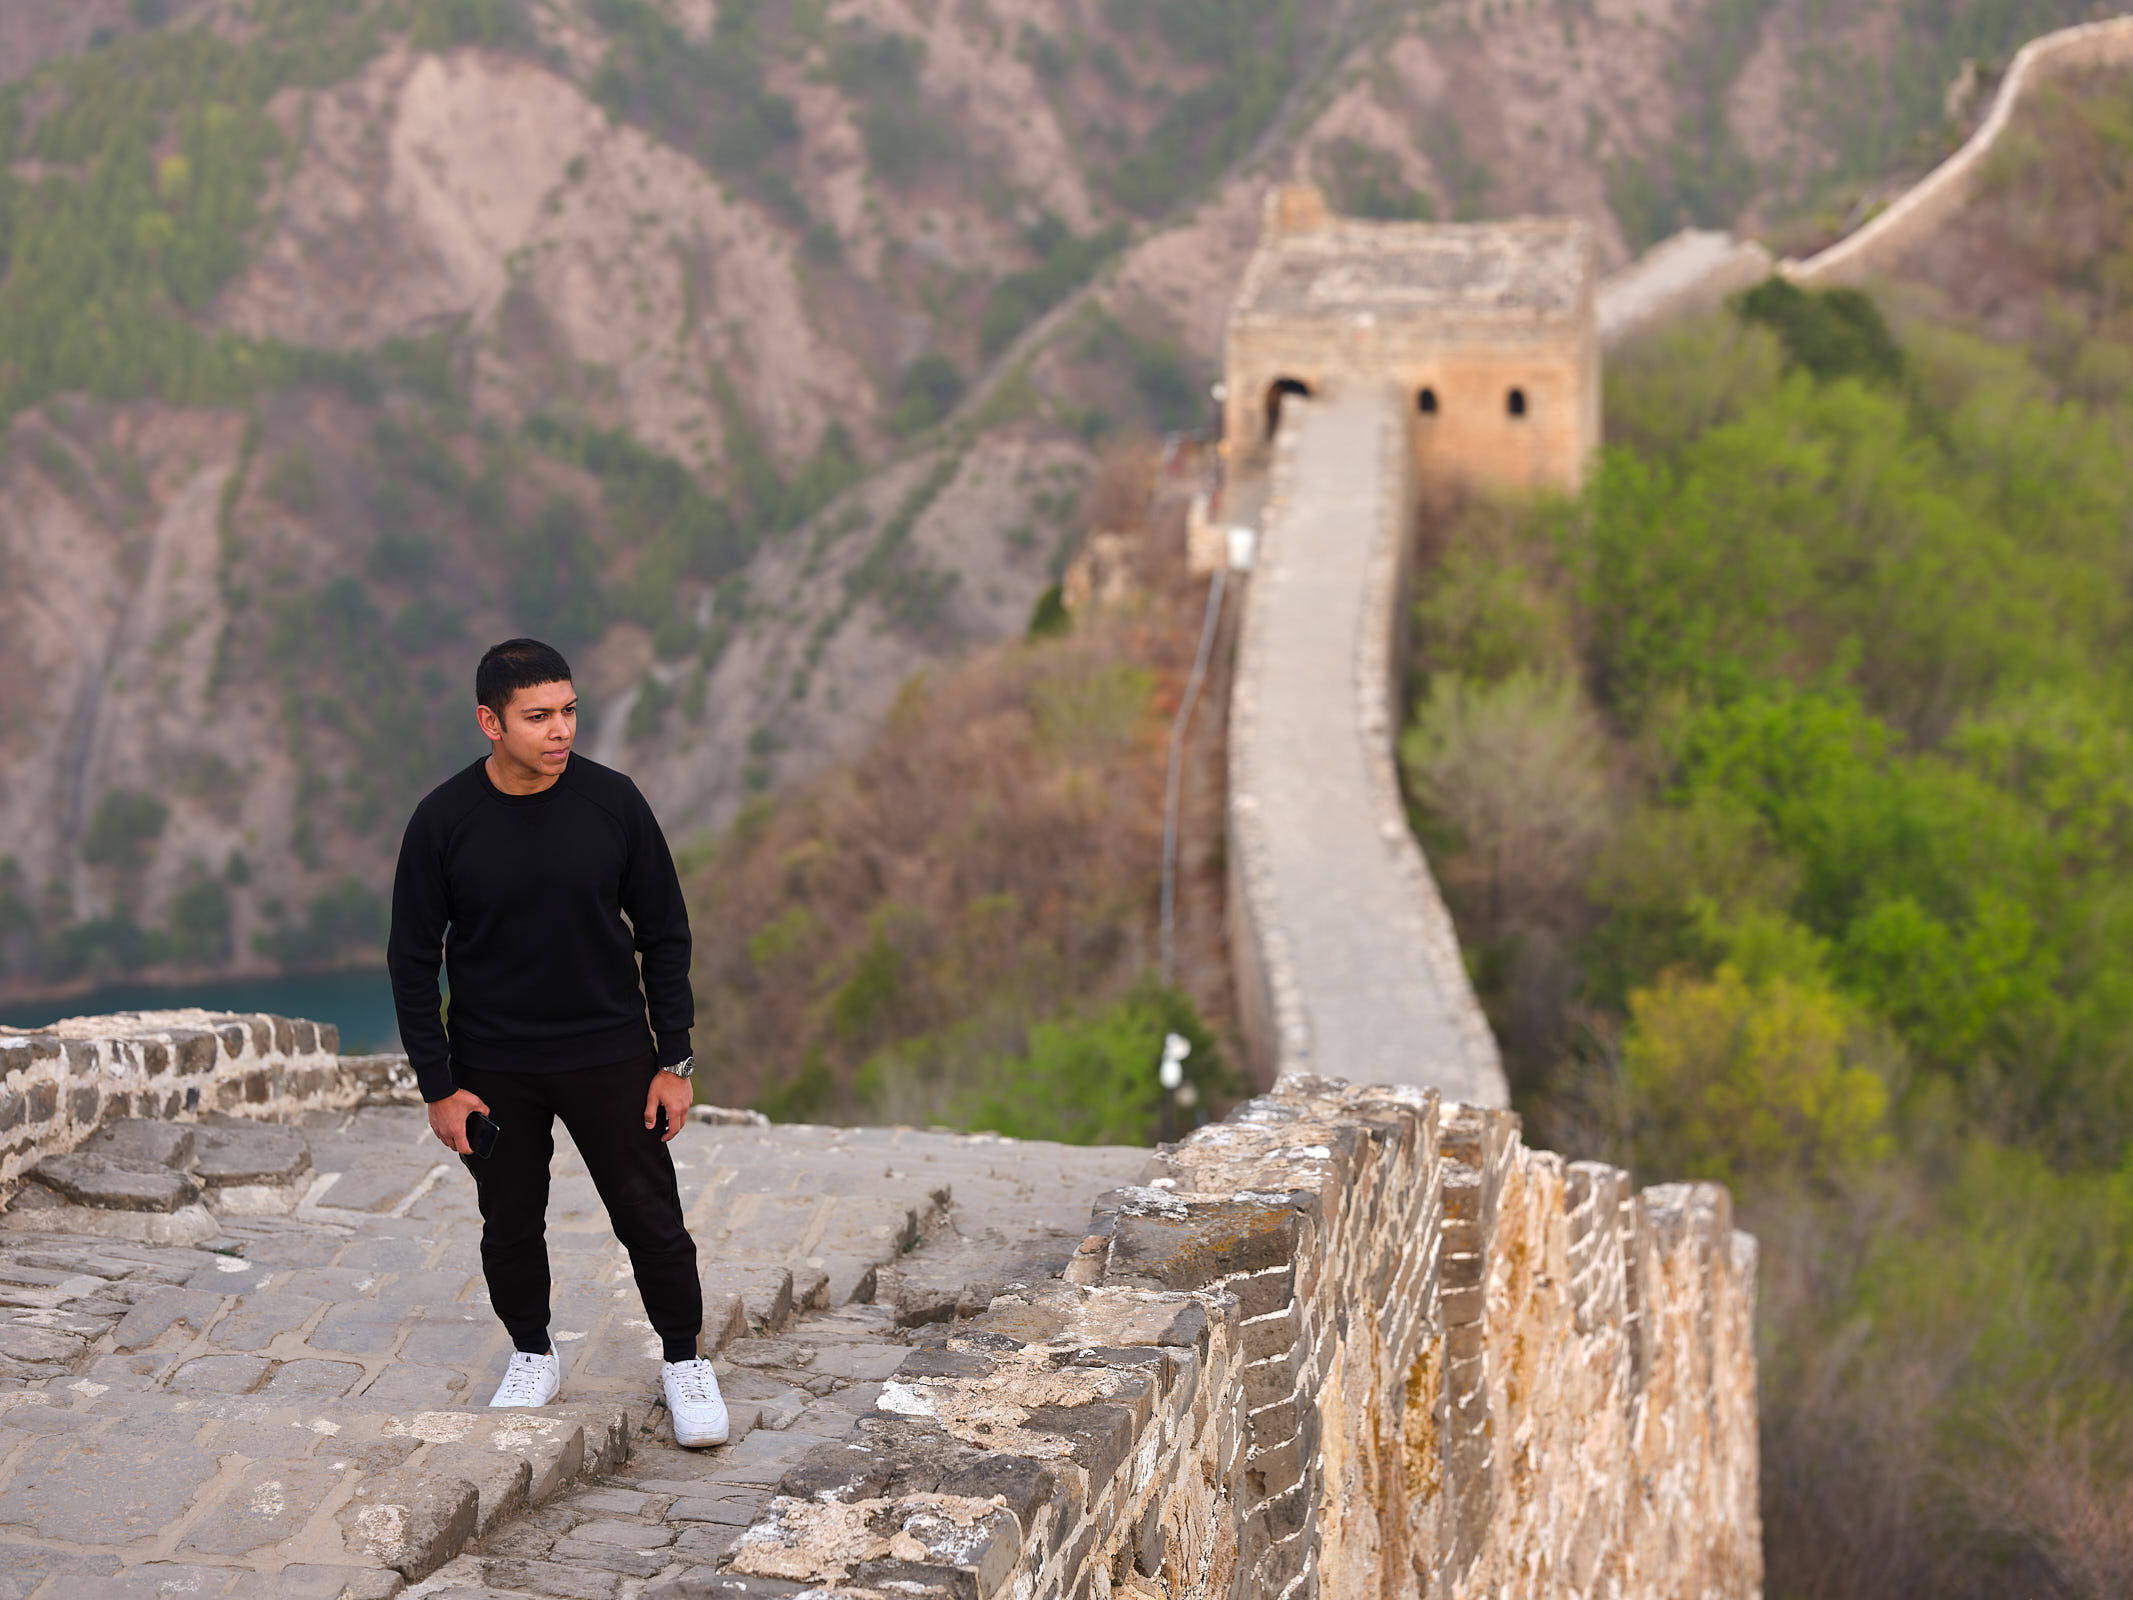 Simatai Great Wall of China at sunrise